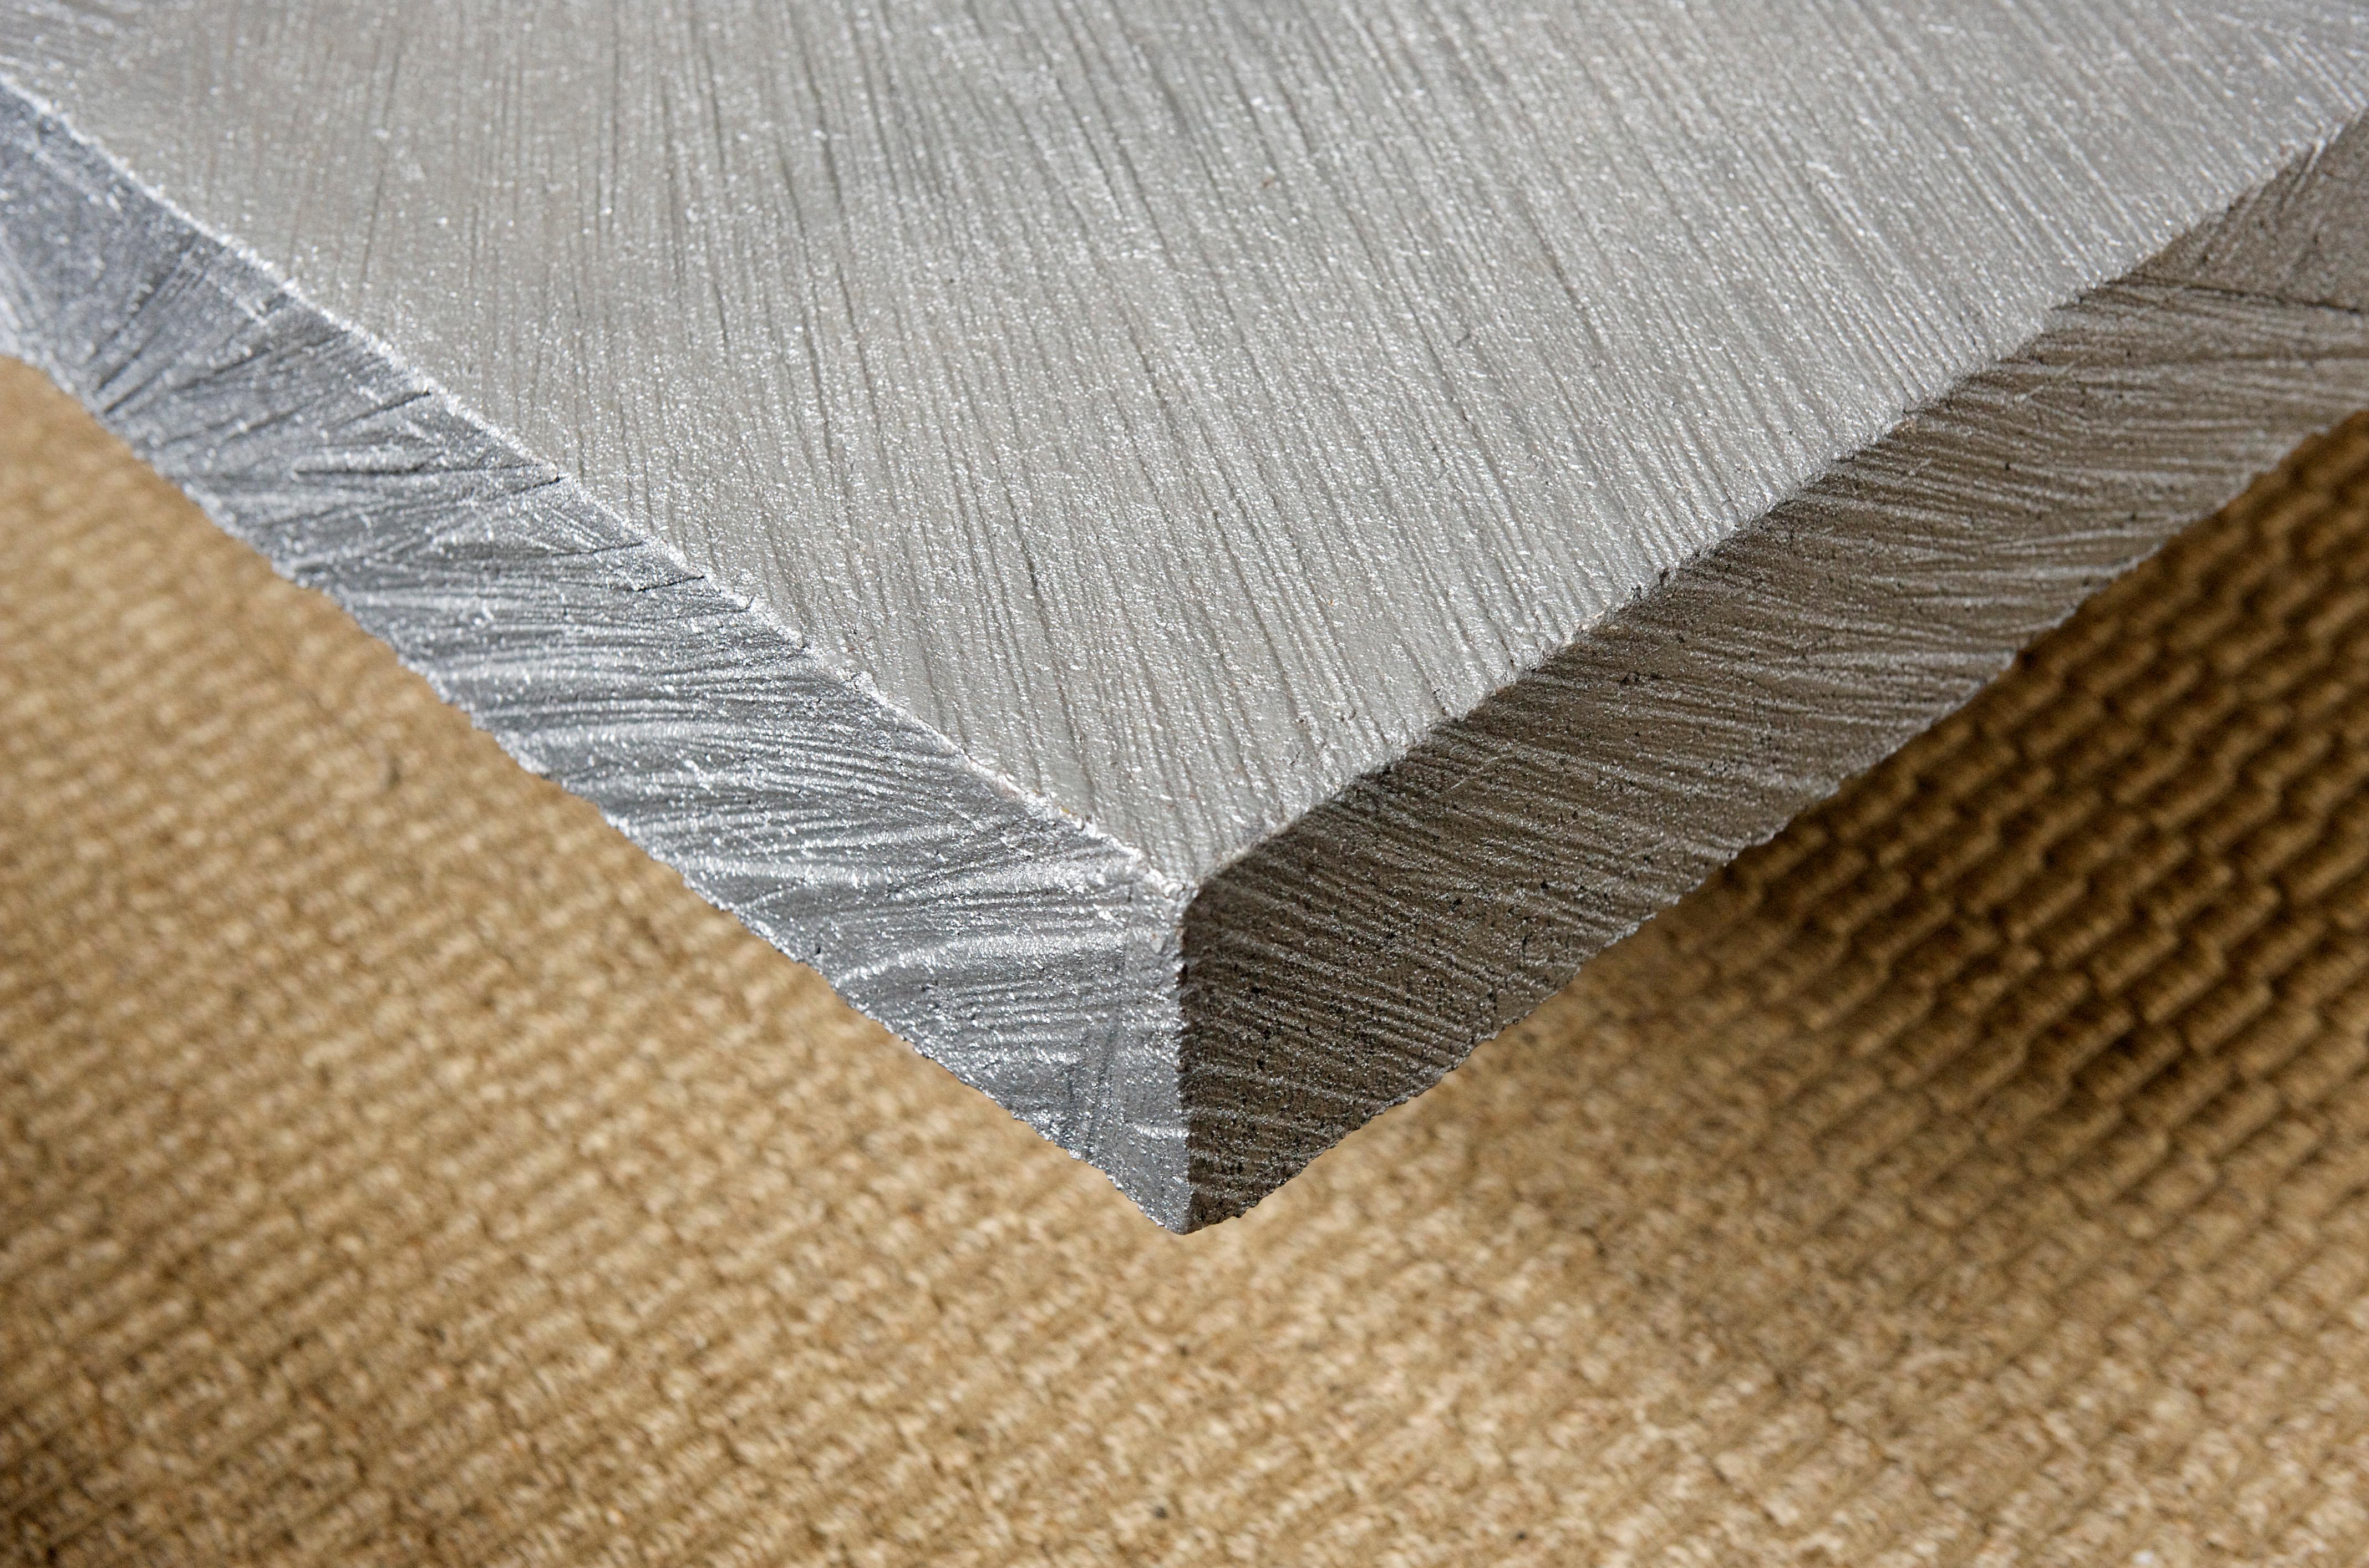 Le calme dans le chaos ! La table Solace est fière de sa fonte d'aluminium texturée à la main, dont les motifs sont créés à partir d'un seul moule pour chaque pièce, ce qui rend chaque pièce unique. La forme simple met en valeur la texture intense